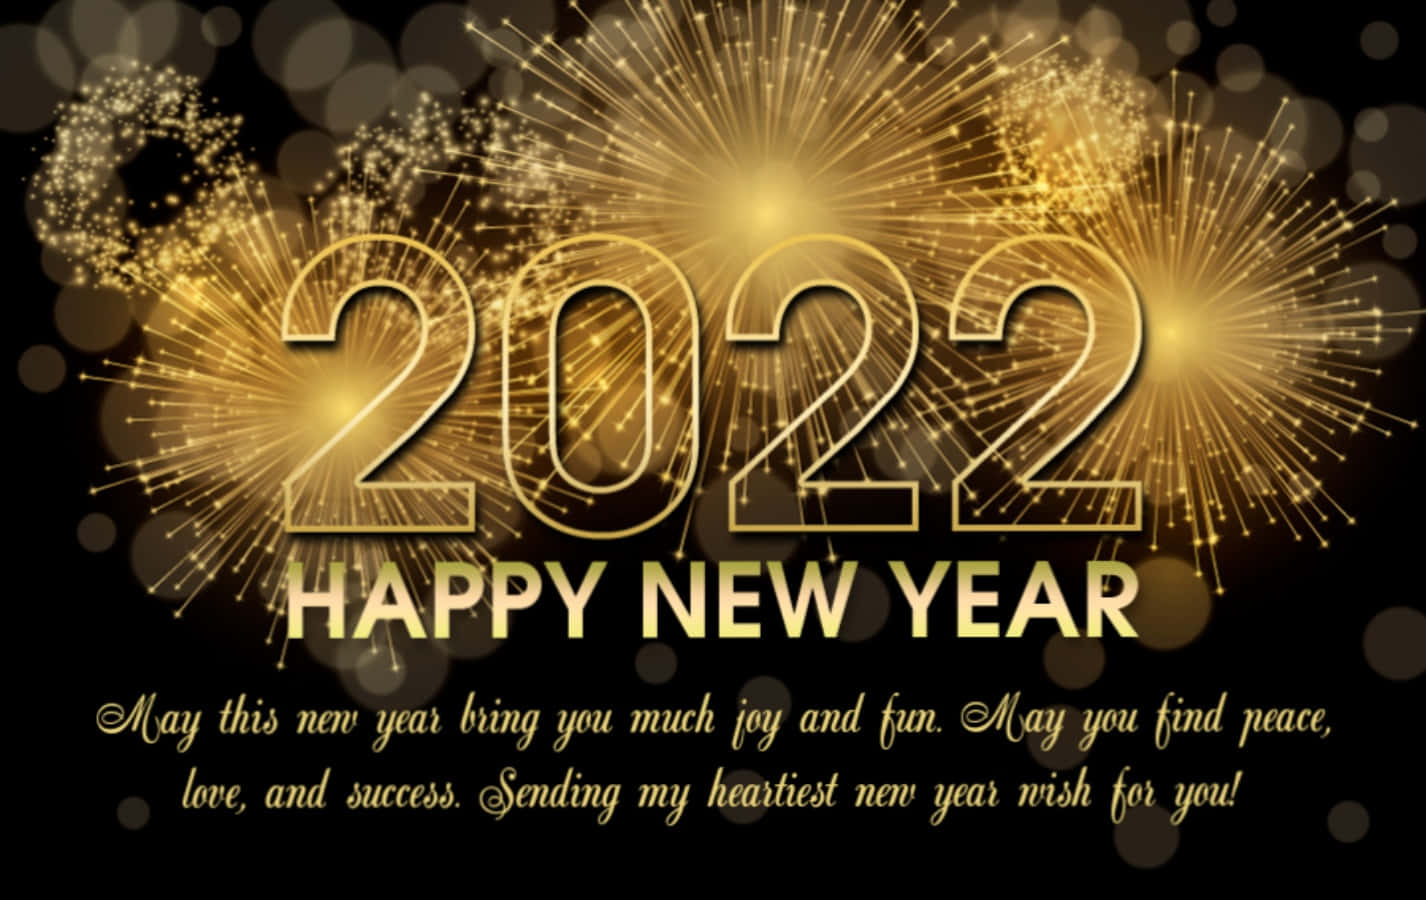 Feiereden Beginn Eines Brandneuen Jahres Mit Den Menschen, Die Du Liebst. Frohes Neues Jahr 2022!